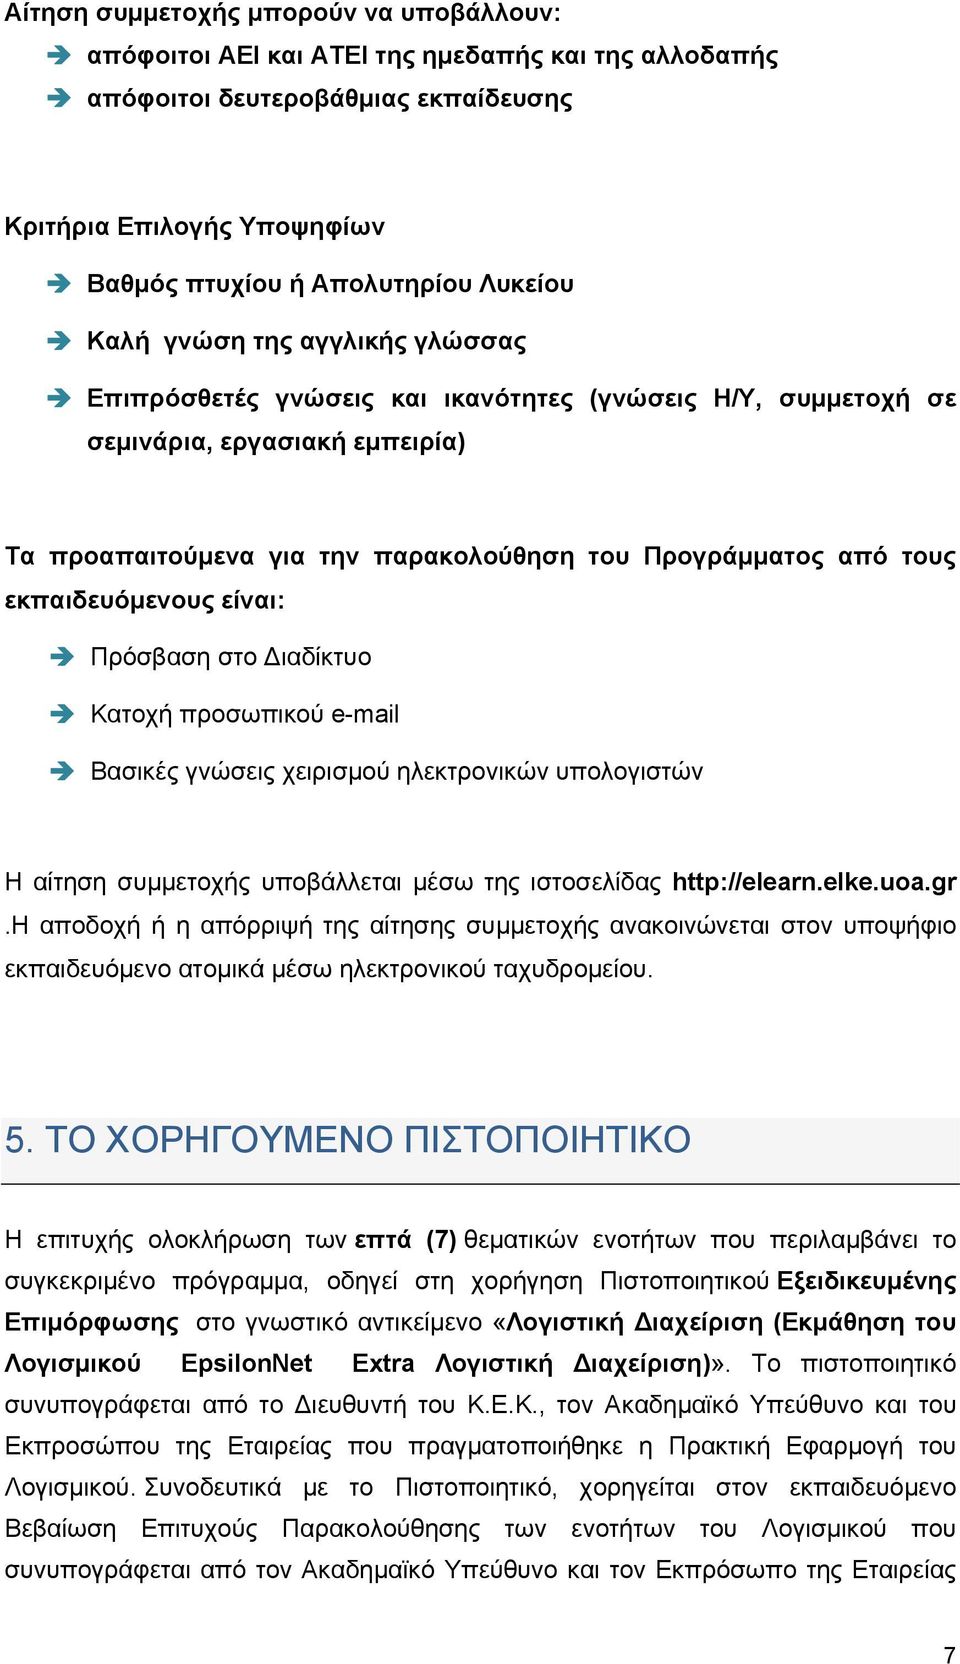 εκπαιδευόμενους είναι: Πρόσβαση στο ιαδίκτυο Κατοχή προσωπικού e-mail Βασικές γνώσεις χειρισμού ηλεκτρονικών υπολογιστών Η αίτηση συμμετοχής υποβάλλεται μέσω της ιστοσελίδας http://elearn.elke.uoa.gr.